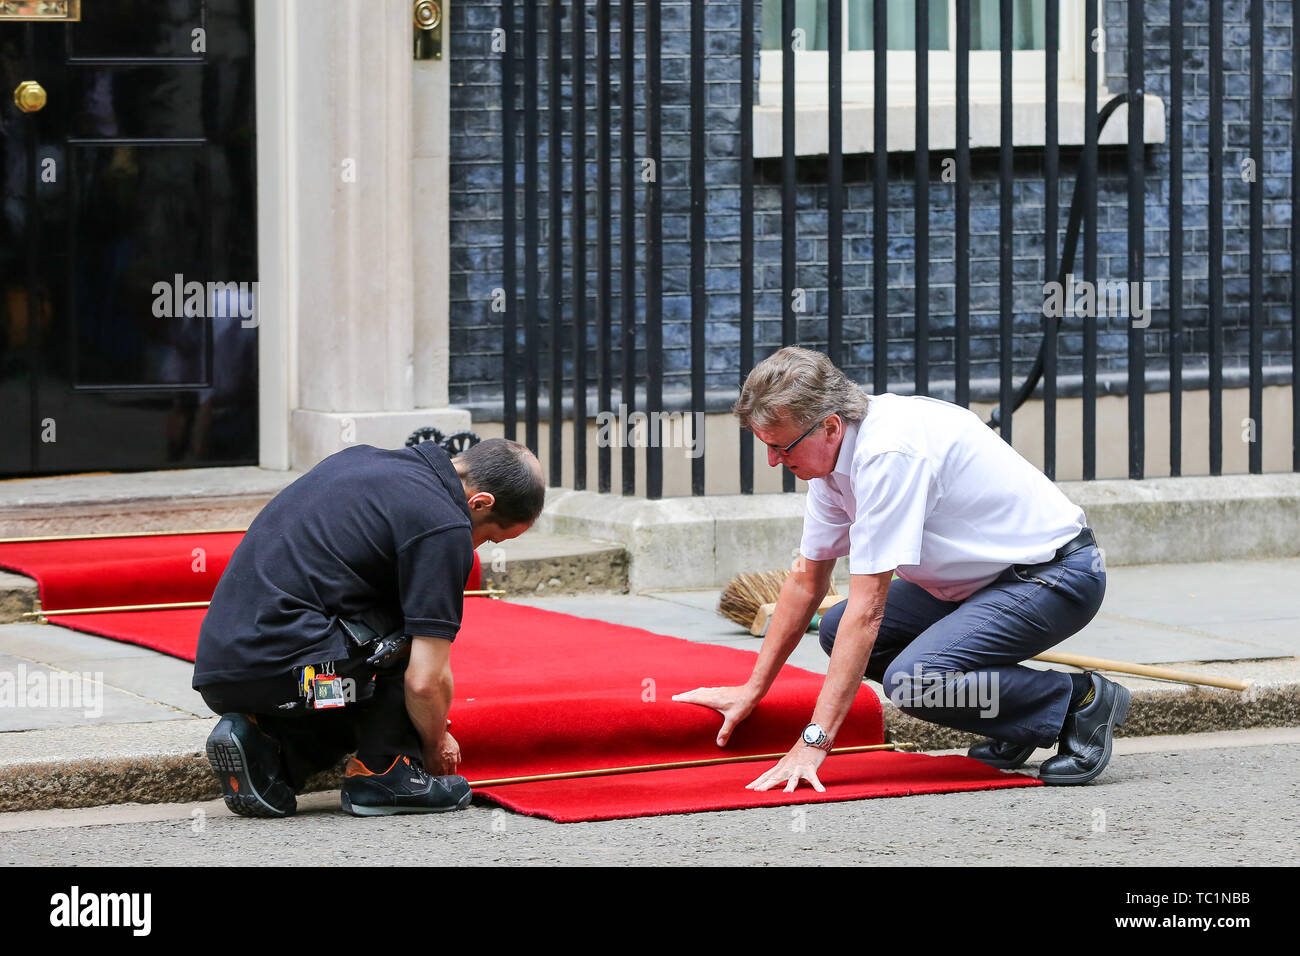 Handwerker legen Sie einen roten Teppich für den US-Präsidenten Donald Trump und First Lady Melania Trump Besuch in Downing Street am zweiten Tag Ihrer dreitägigen Staatsbesuch in Großbritannien. Stockfoto